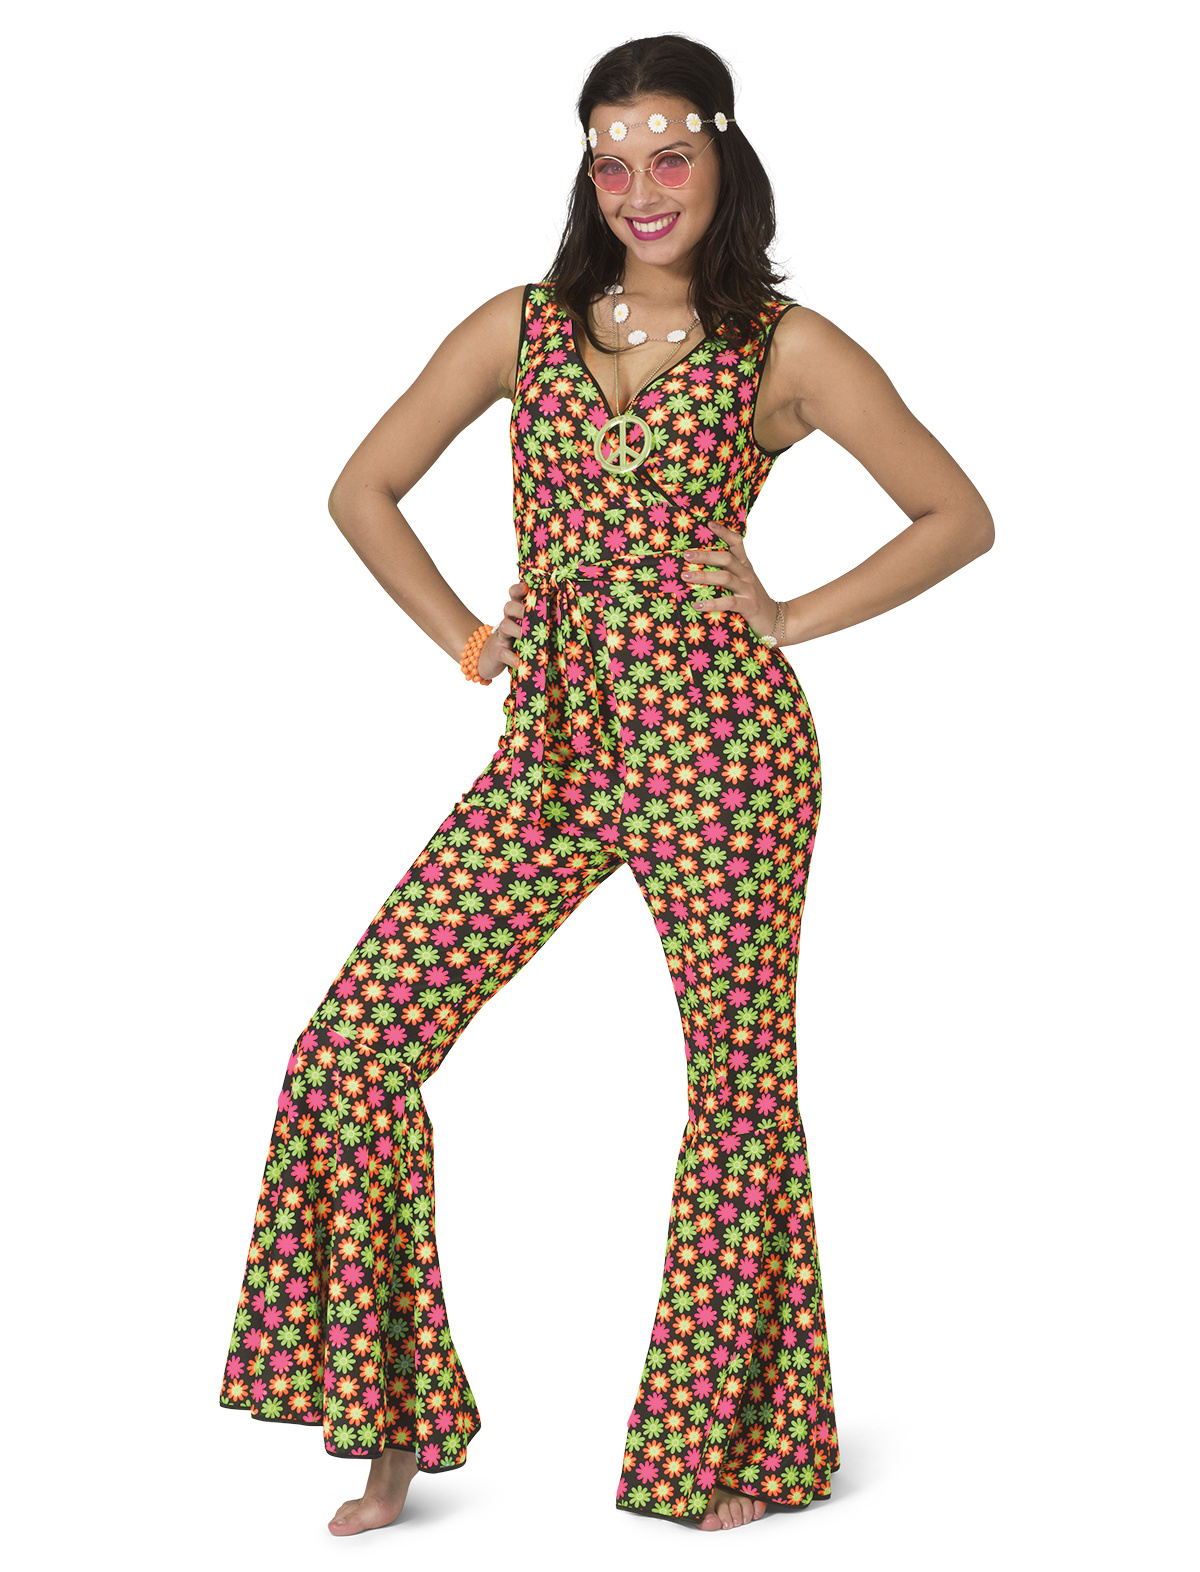 Funny Fashion - Hippie Kostuum - Fluor Flower Power Goes Disco - Vrouw - geel,roze - Maat 40-42 - Carnavalskleding - Verkleedkleding